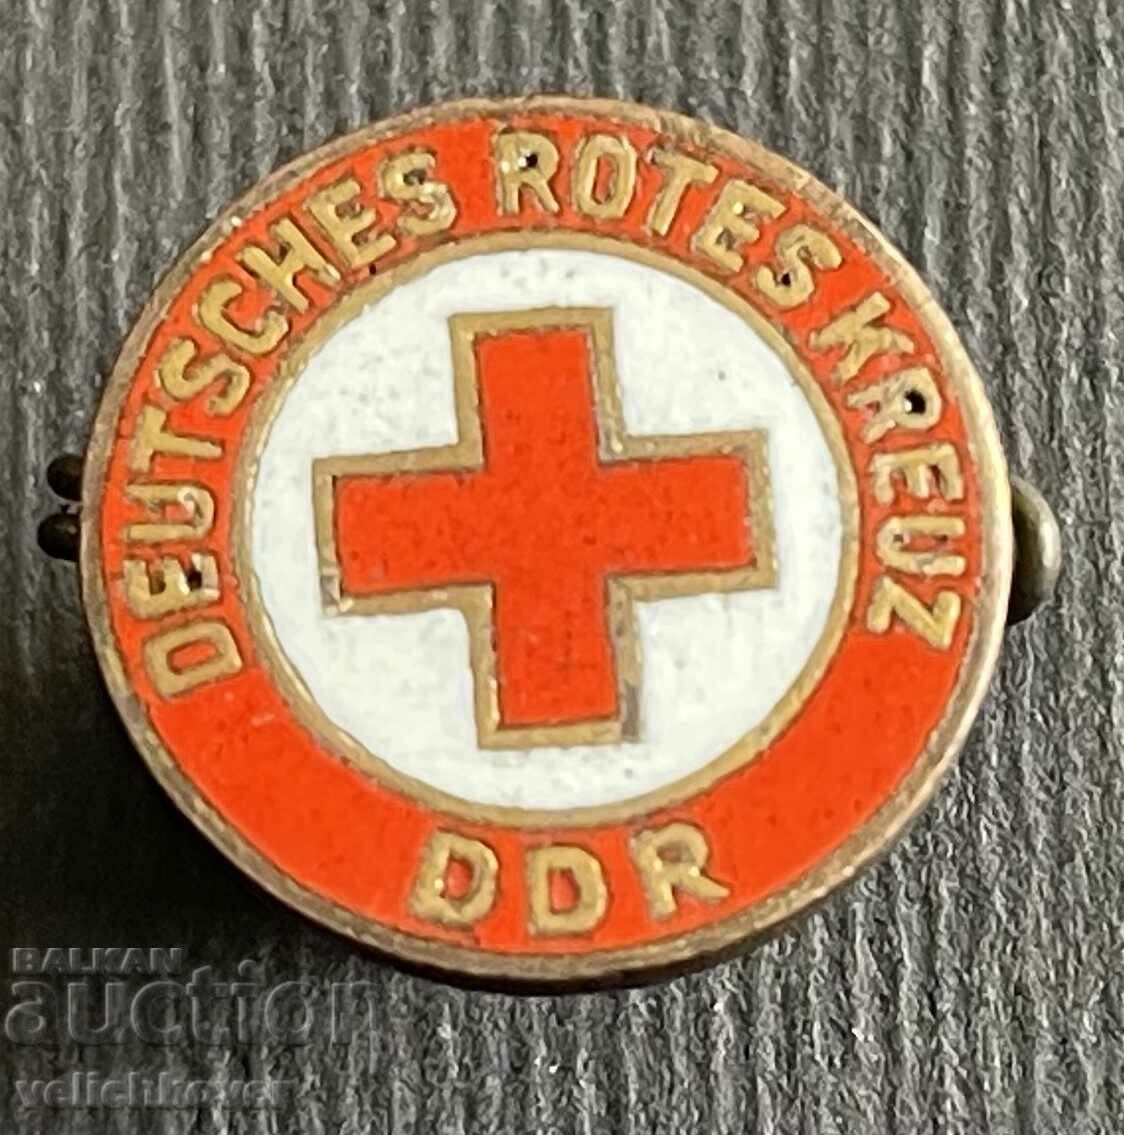 36900 GDR Ανατολική Γερμανία Σημάδι Ερυθρού Σταυρού